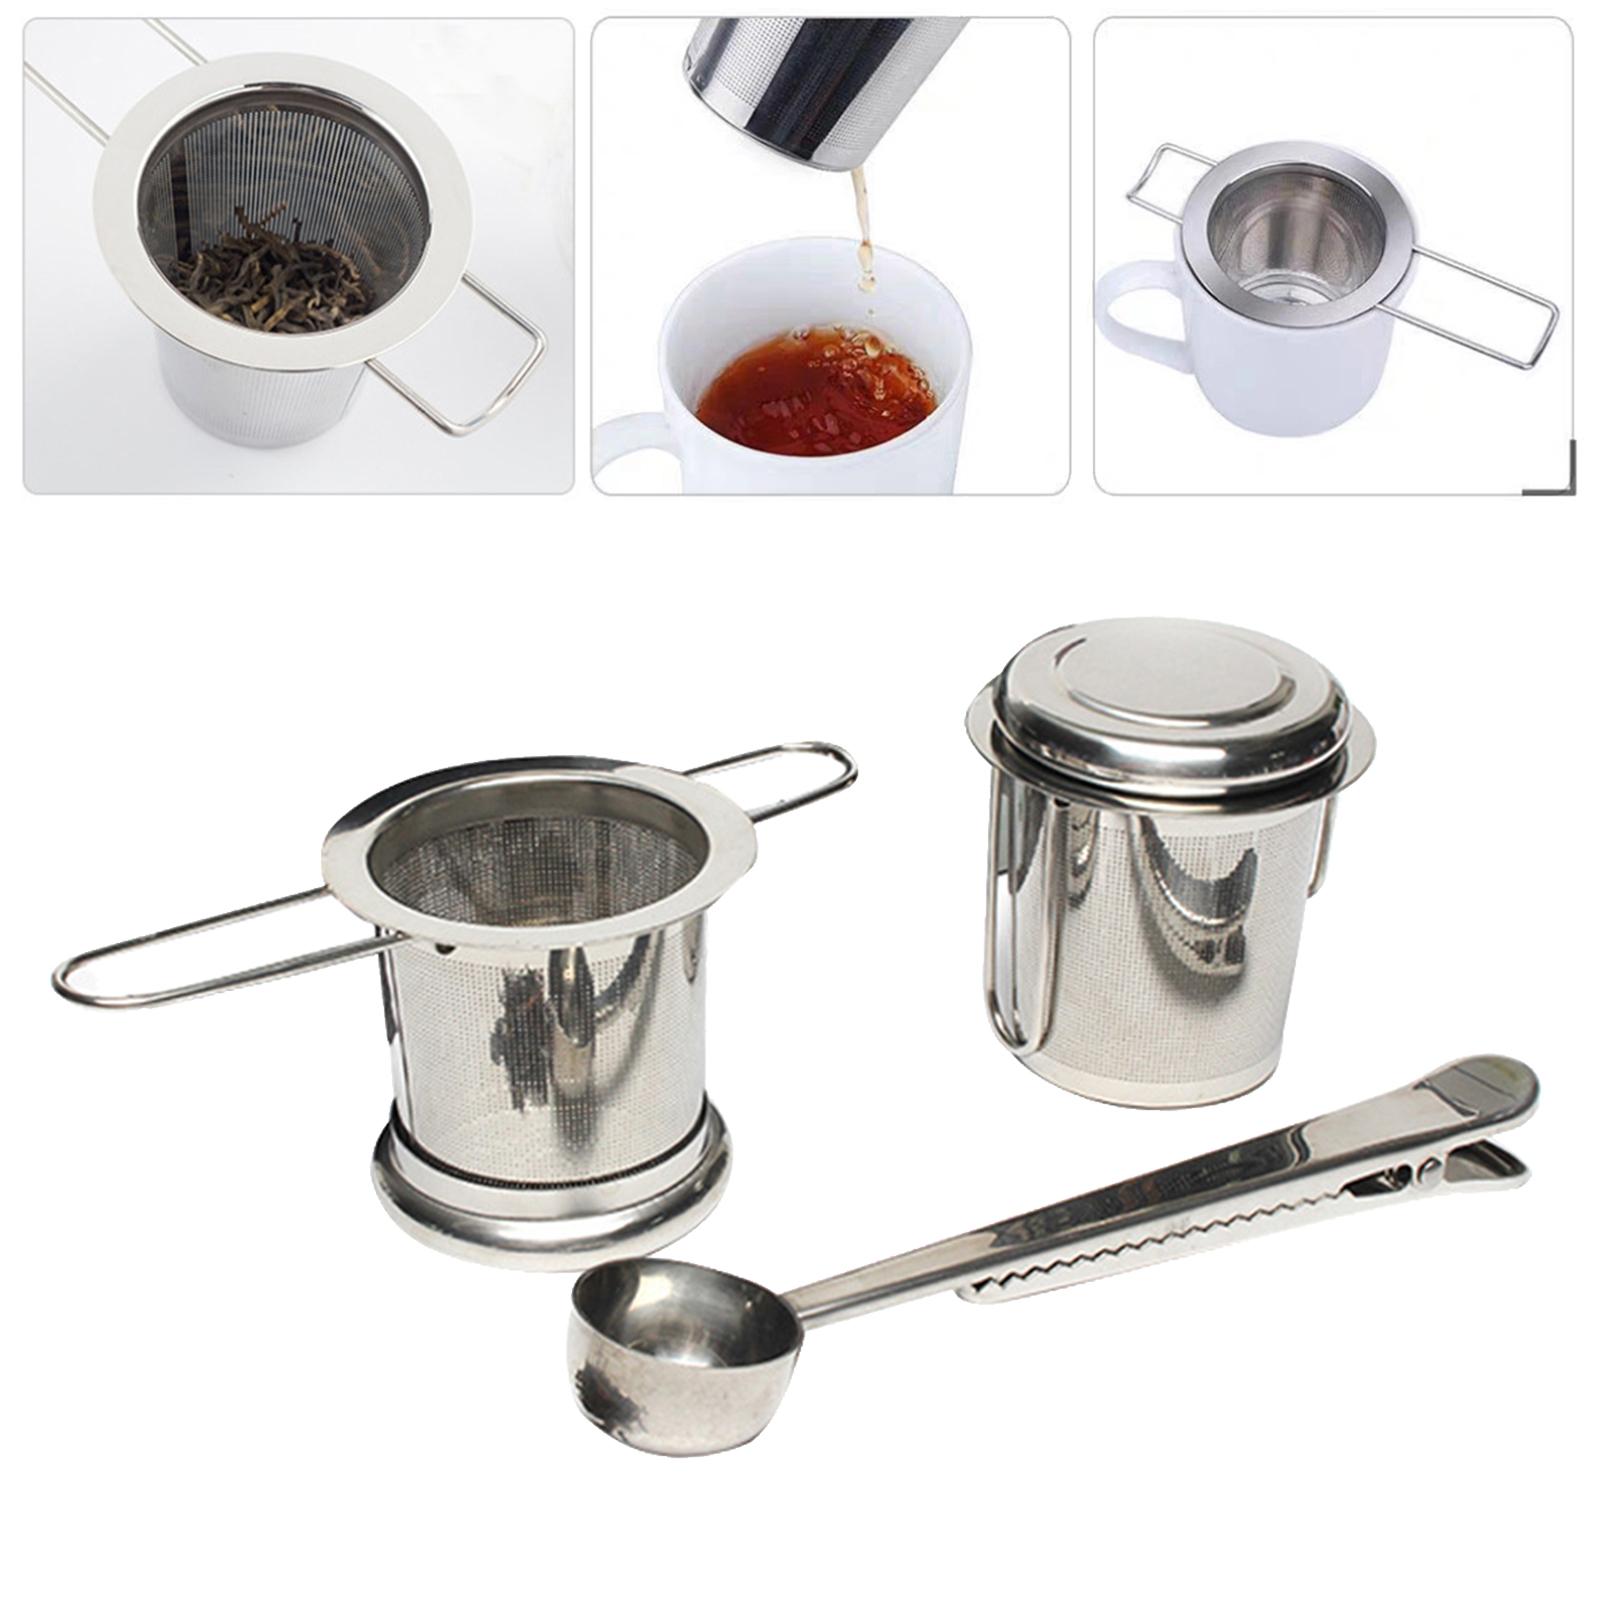 Tea Infuser Fine Mesh Strainer Stainless Steel Mesh Tea Infuser Loose Leaf Filter for Brewing Tea